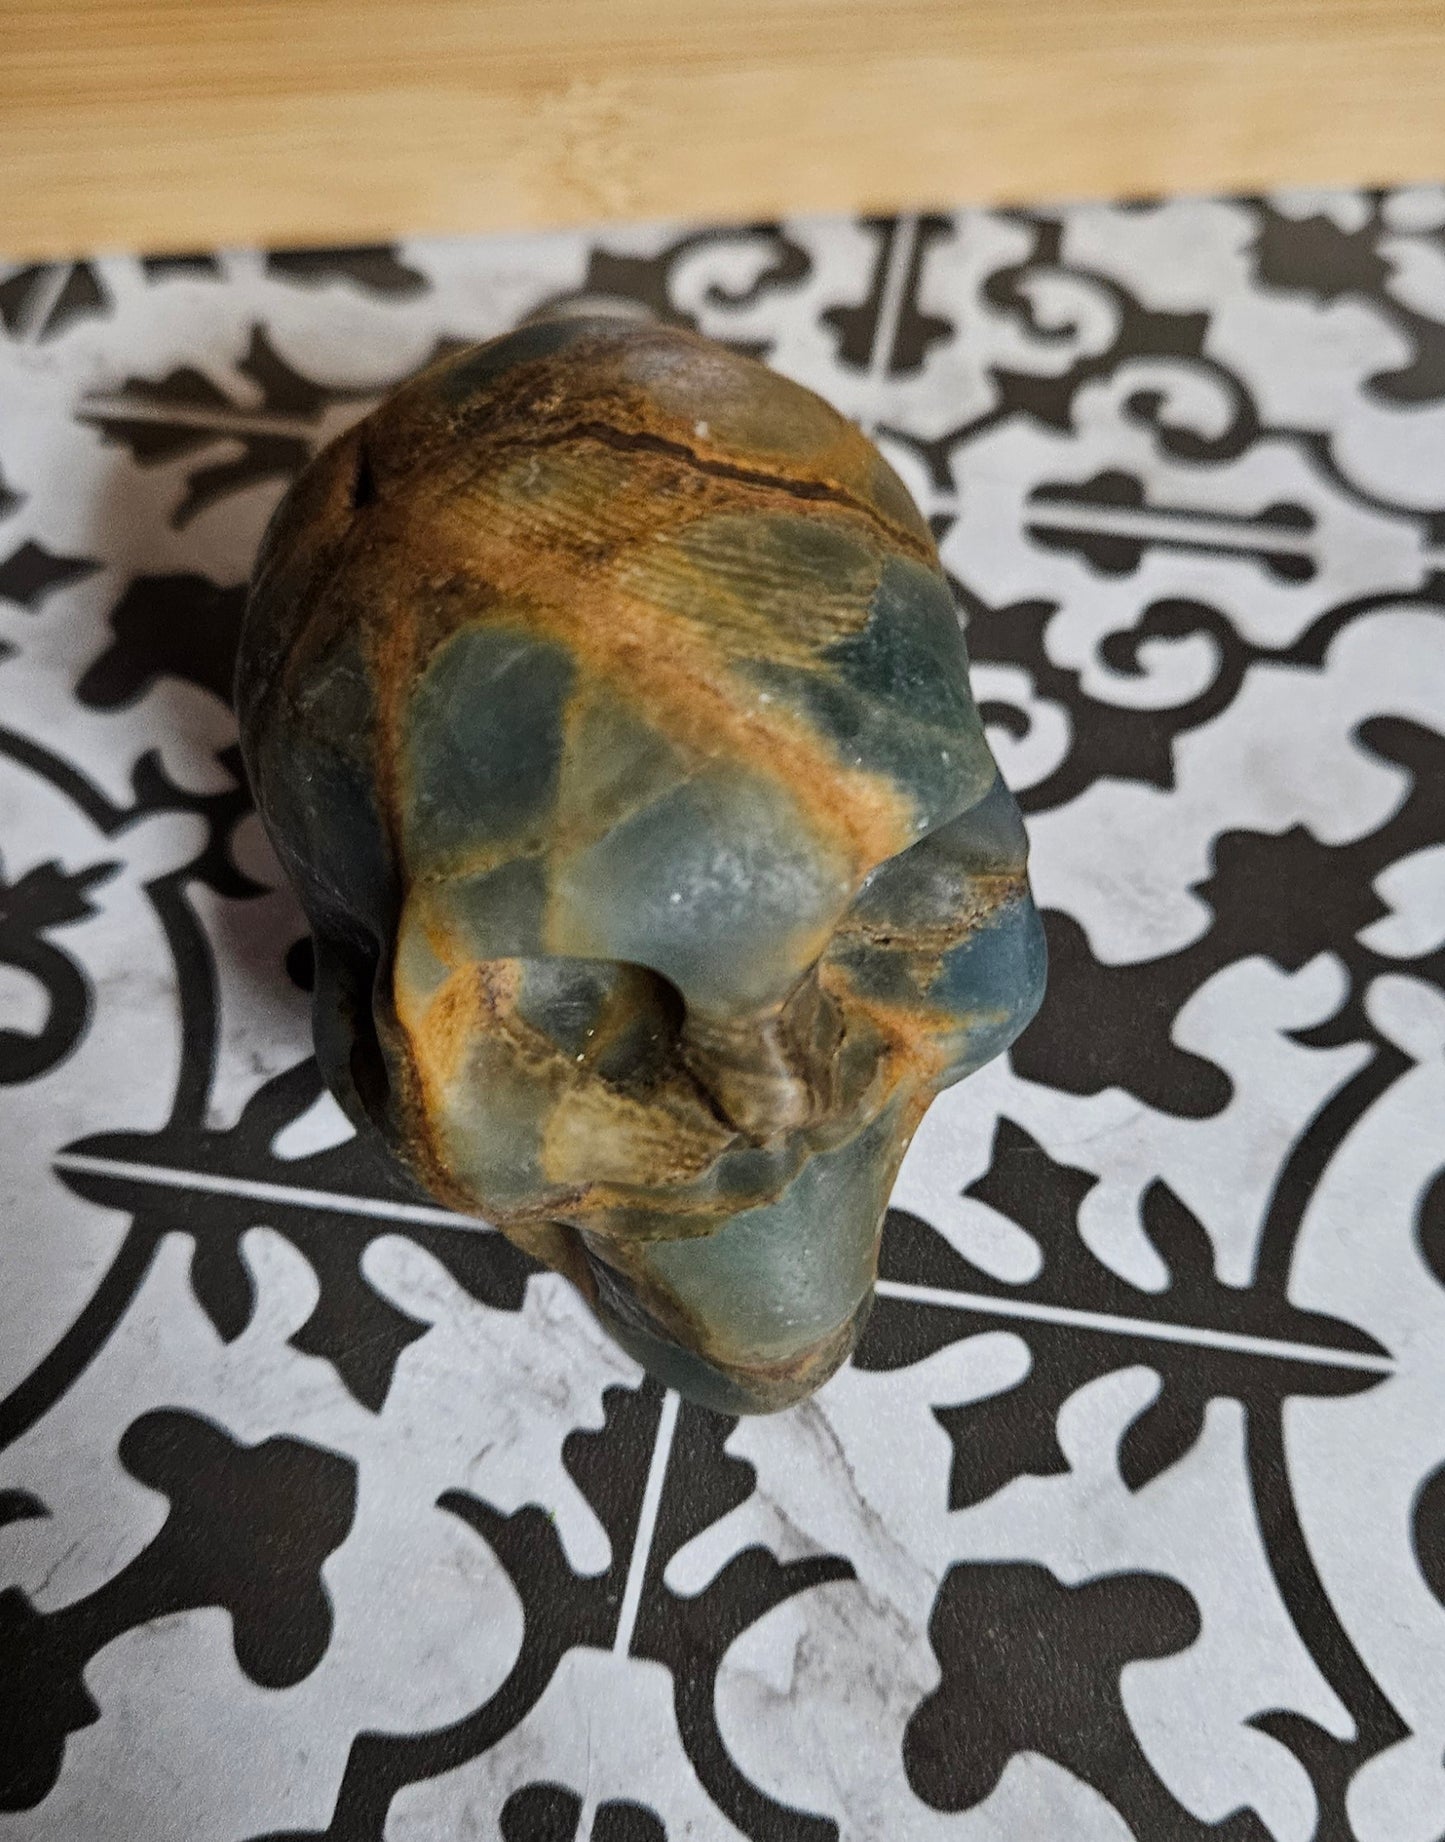 Blue Calcite "Blue Onyx" (Lemurian Aquatine) Carved Skull